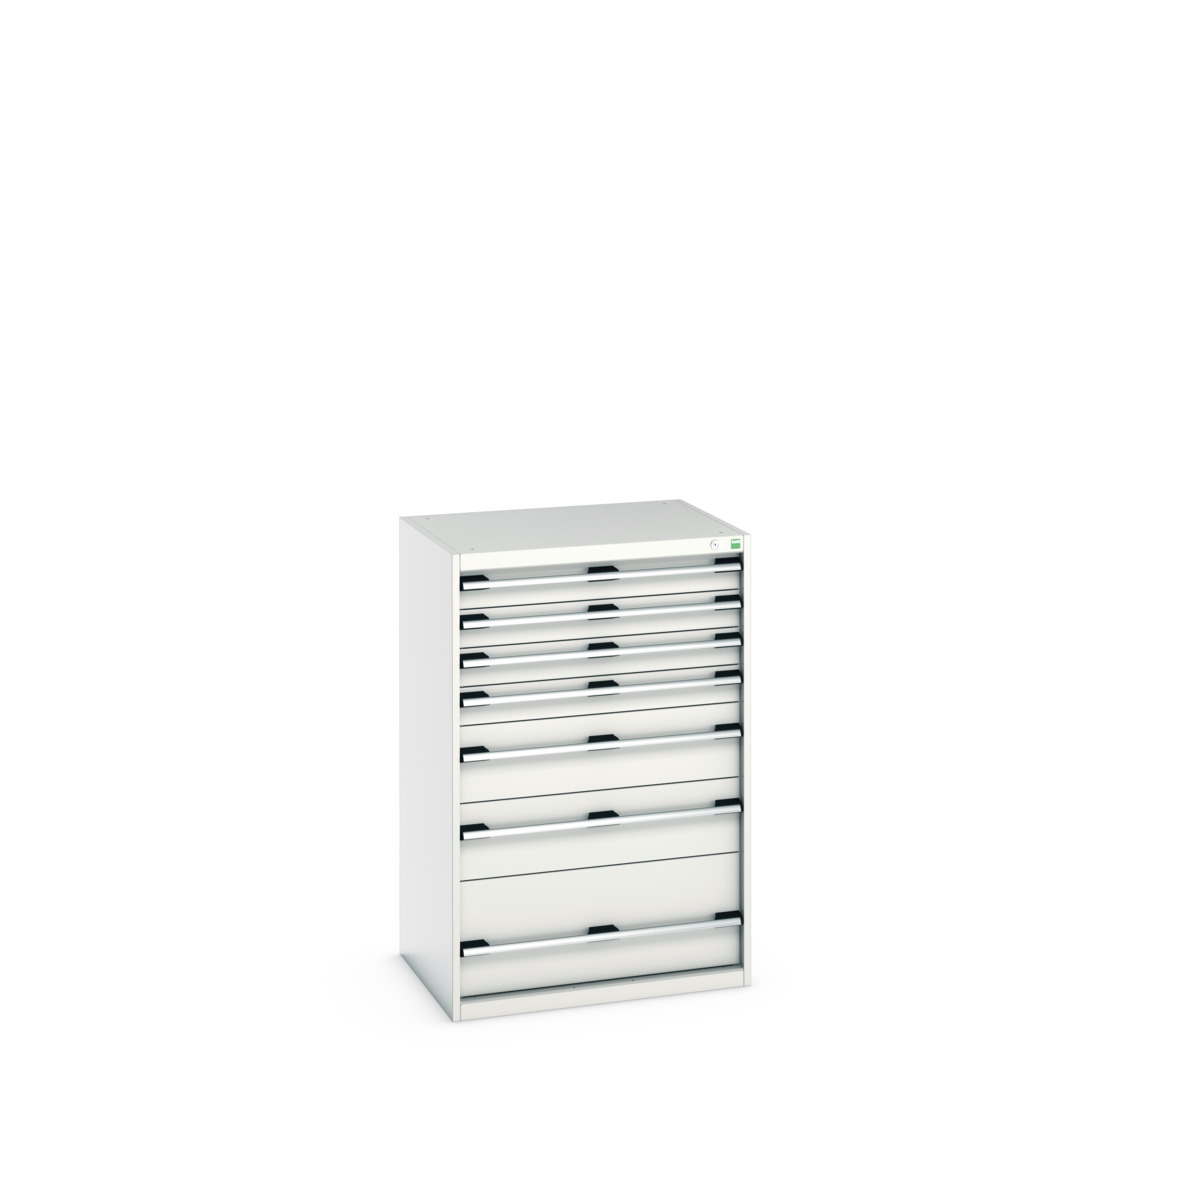 40020060.16V - cubio drawer cabinet